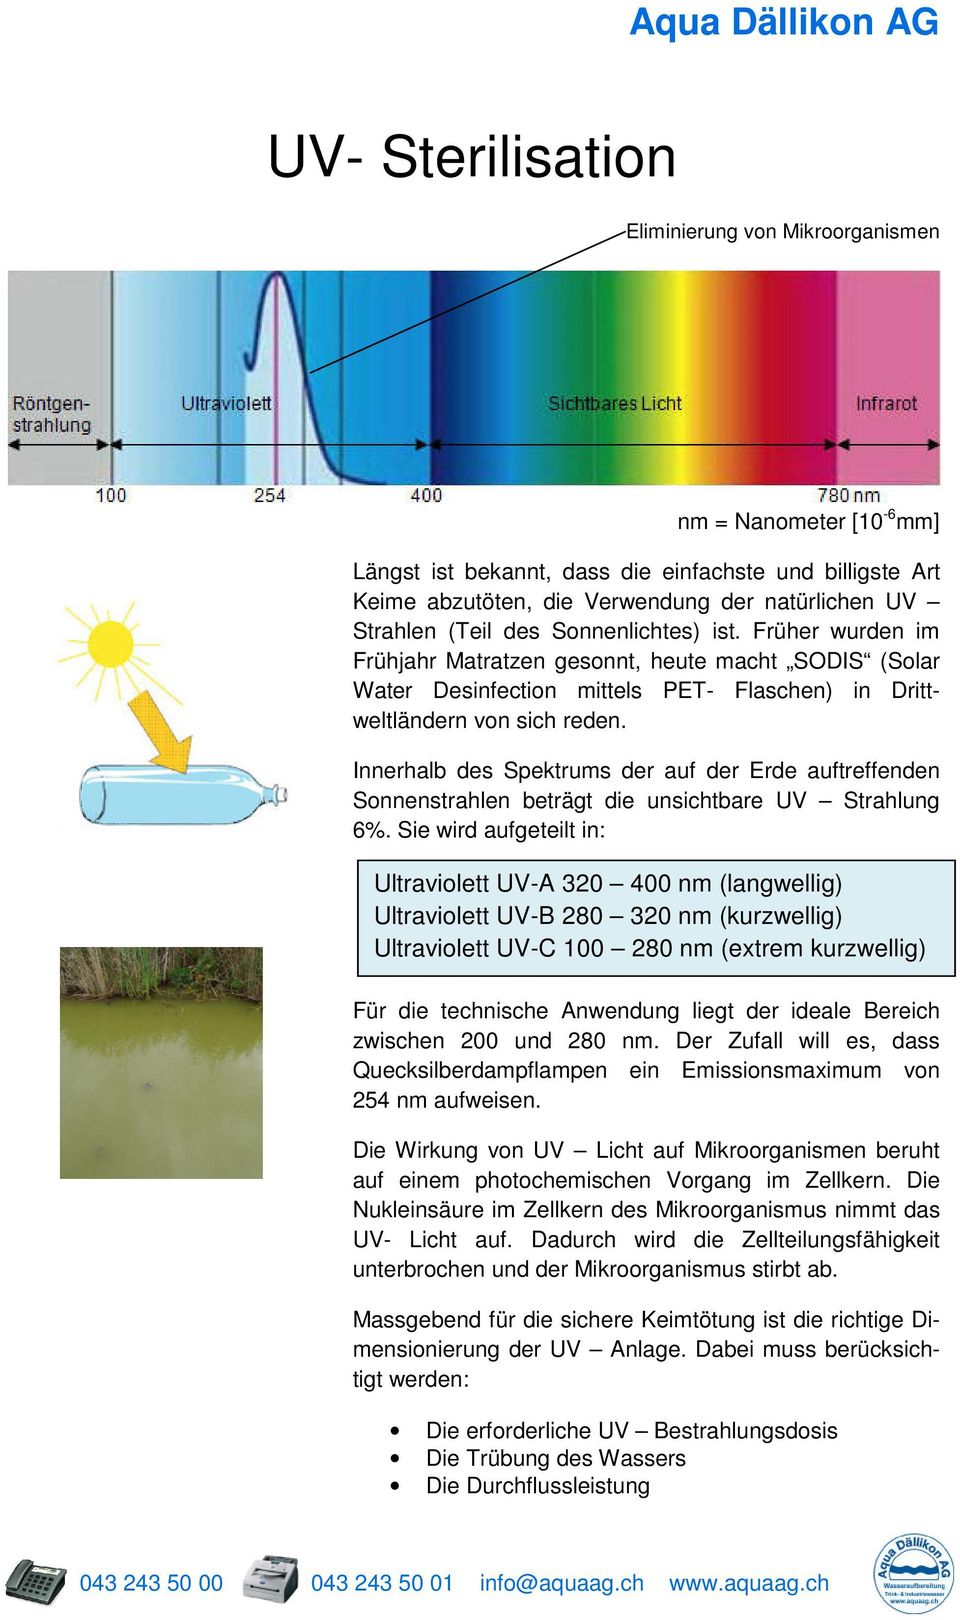 Innerhalb des Spektrums der auf der Erde auftreffenden Sonnenstrahlen beträgt die unsichtbare UV Strahlung 6%.